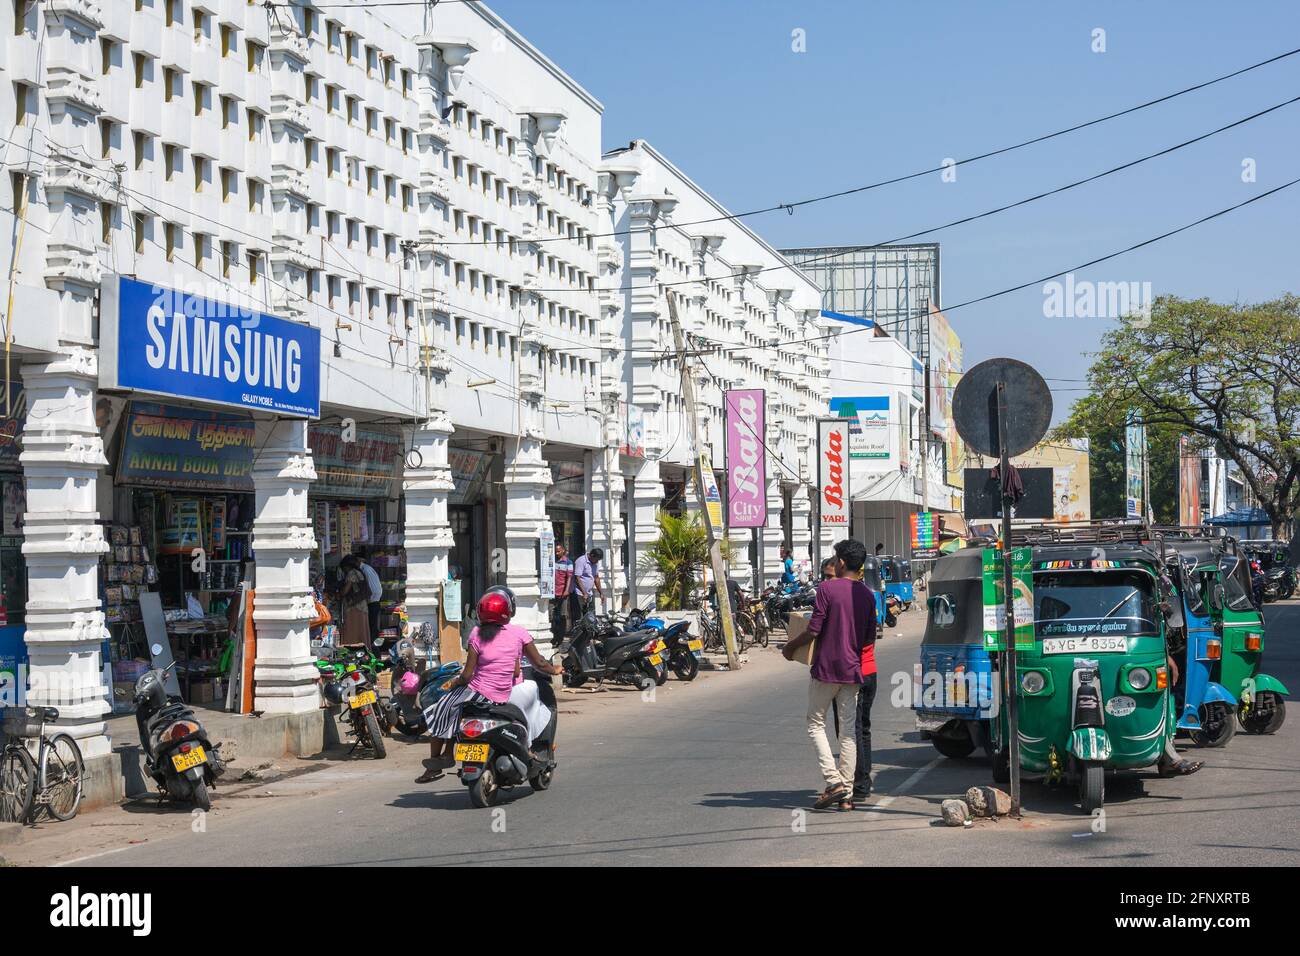 Shoppen Sie Gebäude im Zentrum von Jaffna mit Samsung und Bata Werbung und geparkten Auto Rikschas, Northern Province, Sri Lanka Stockfoto